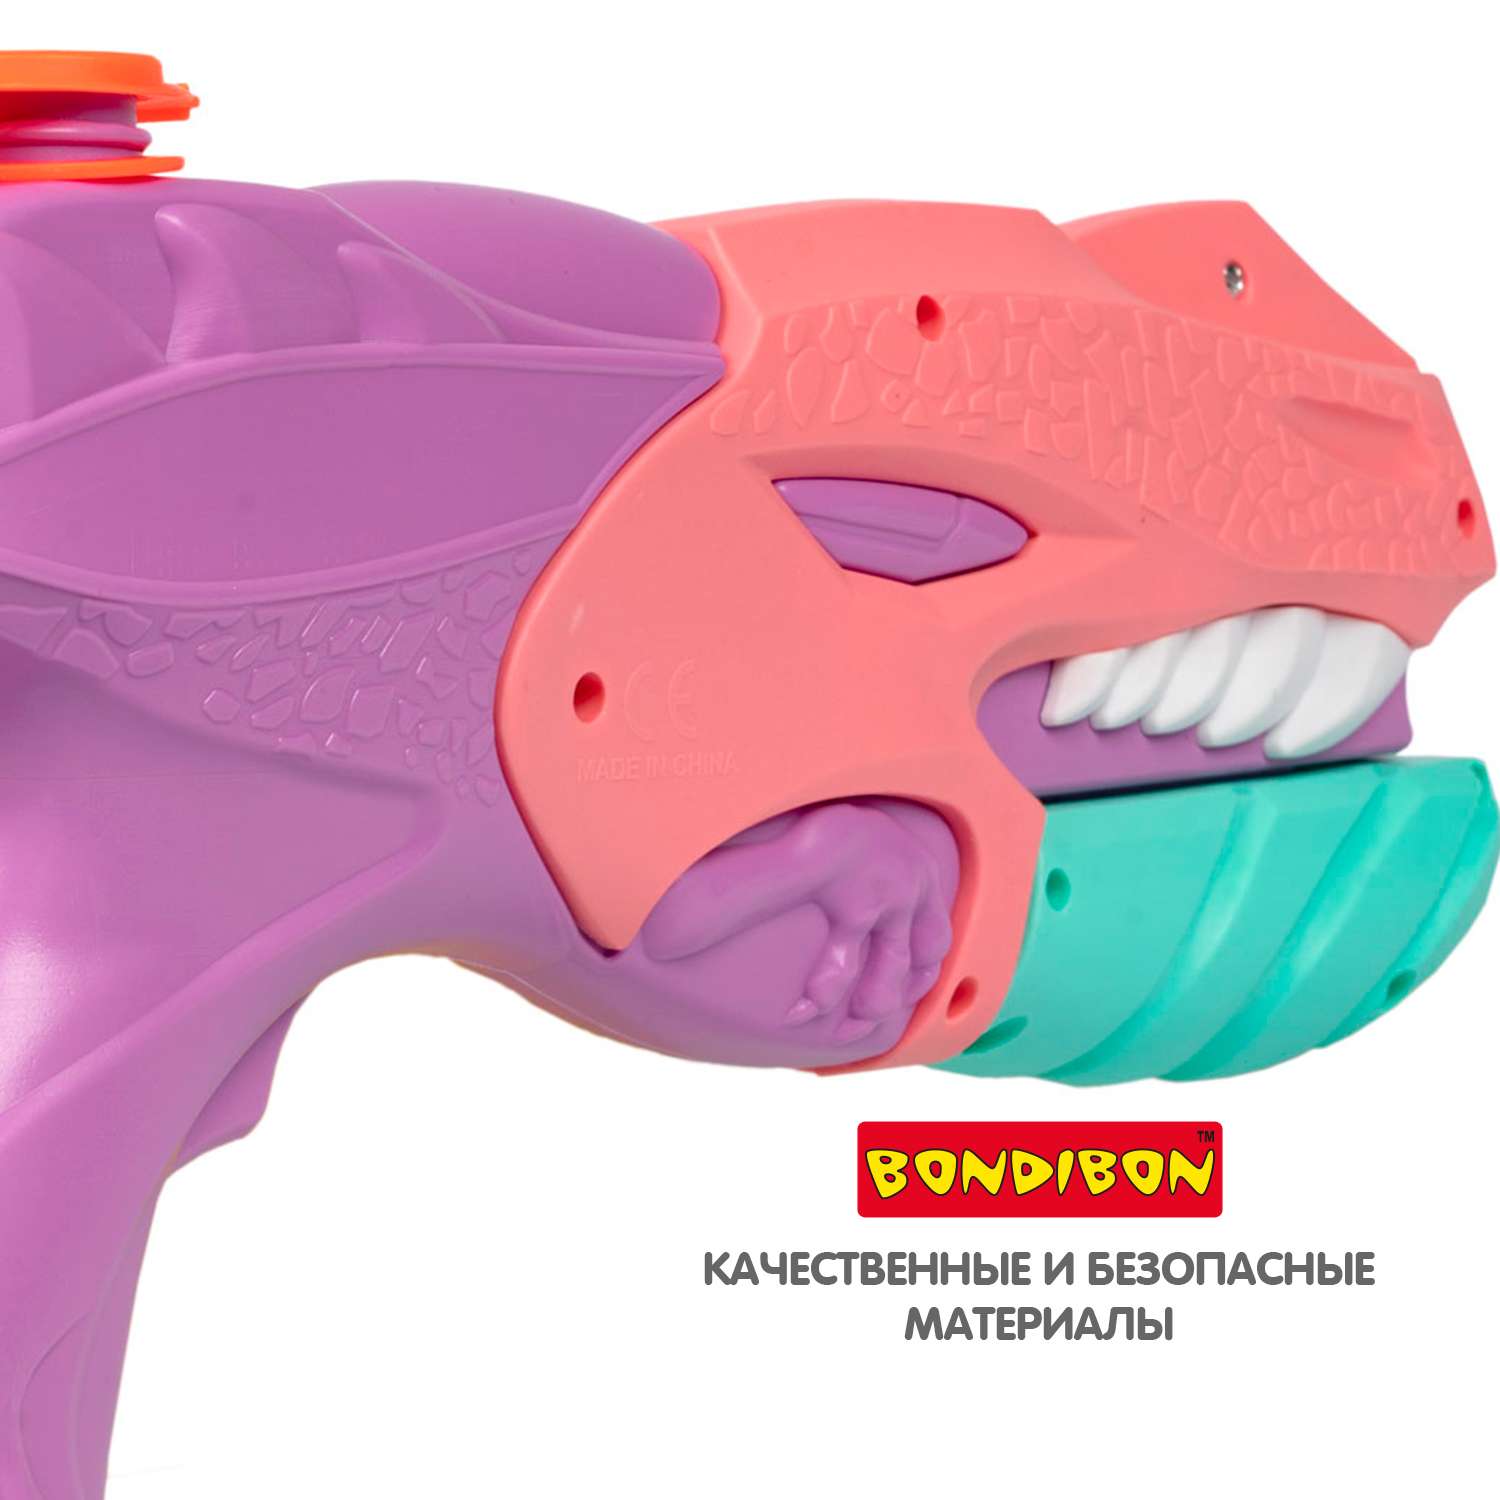 Водный пистолет BONDIBON с помпой 450 мл розово-сиреневого цвета серия Наше Лето - фото 7